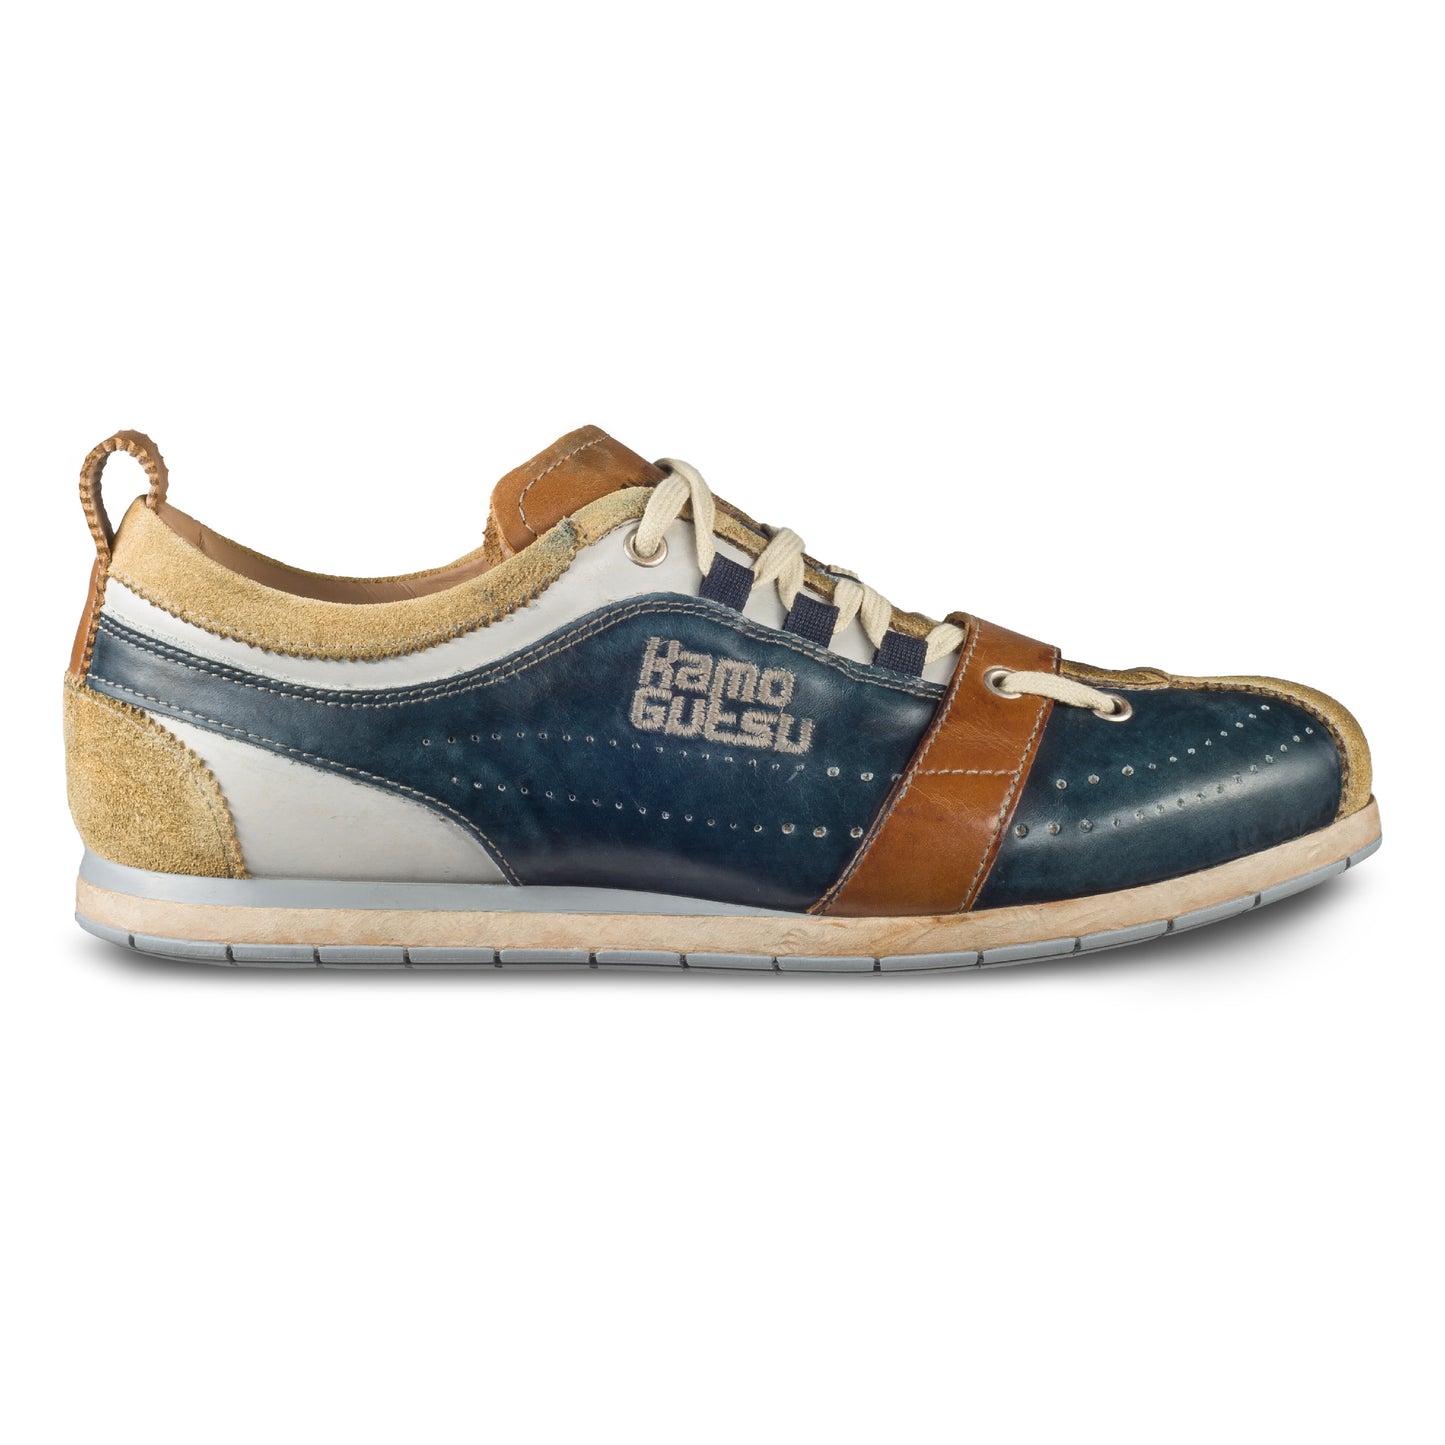 KAMO-GUTSU Herren Leder Sneaker in blau/beige/braun, Retro-Optik. Modell TIFO-017 miele + navy. Handgefertigt in Italien. Ansicht der Außenseite rechter Schuh. 